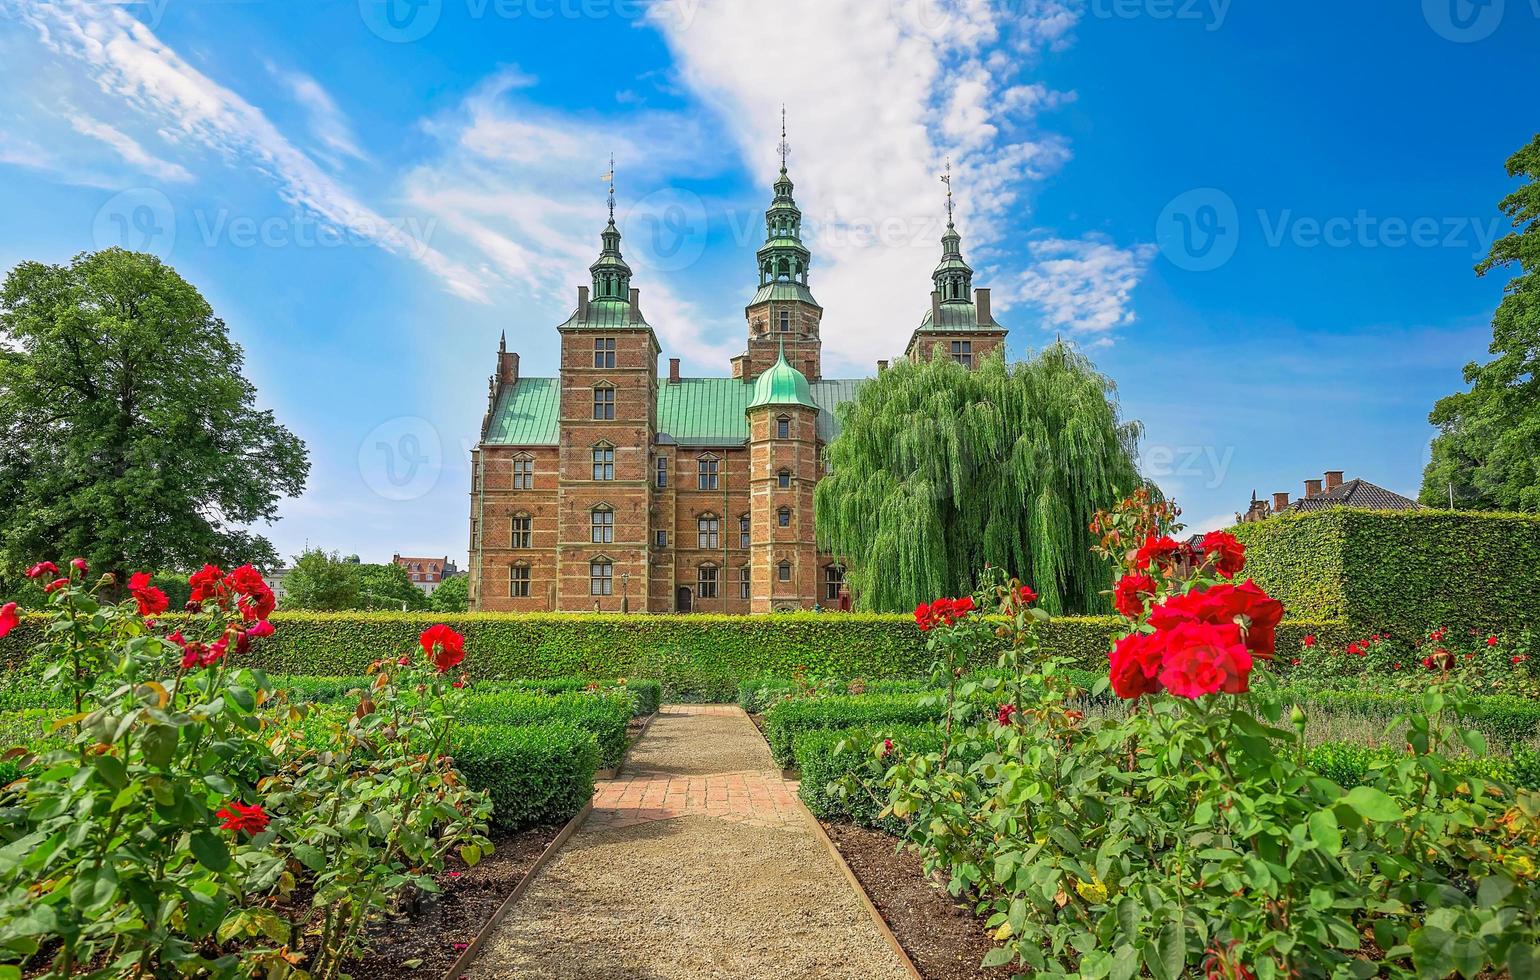 famoso castello di rosenborg, una delle attrazioni turistiche più visitate di copenhagen foto